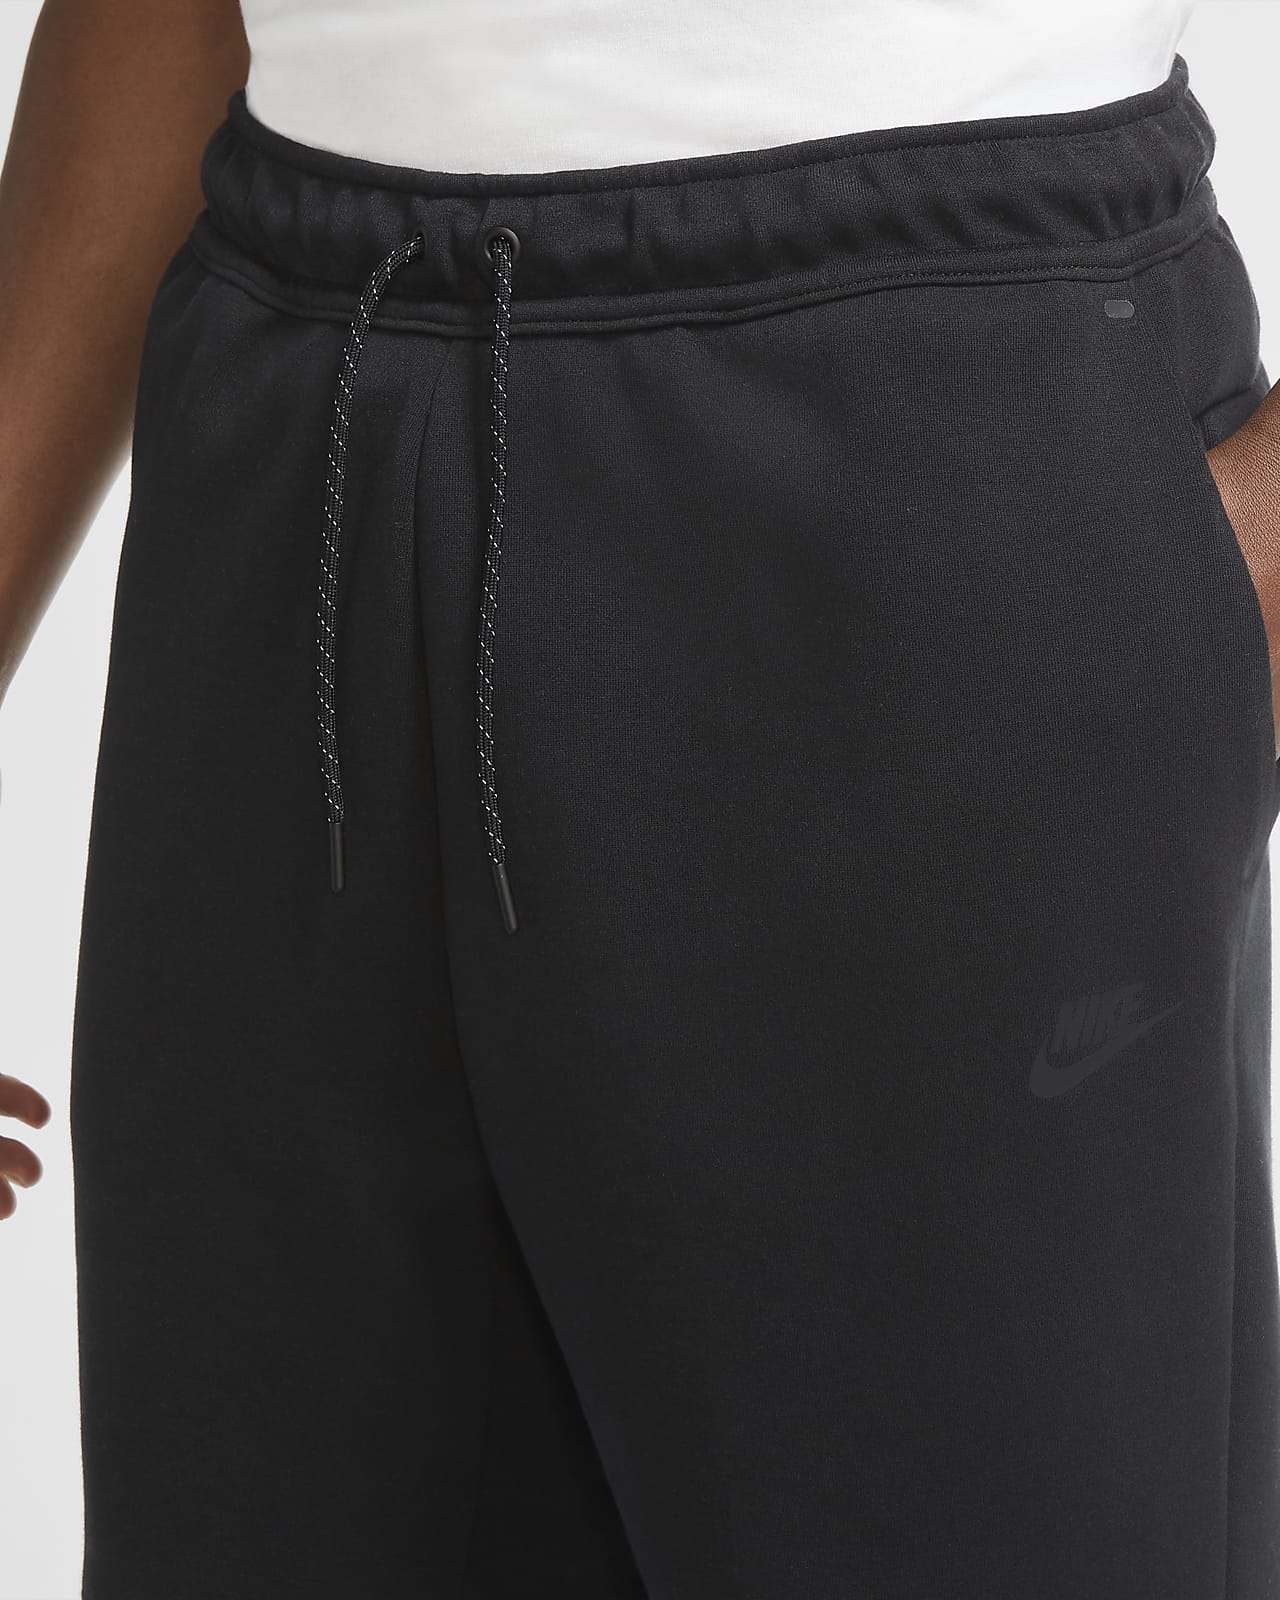 Nike Sportswear Tech Fleece Men's Shorts. Nike MY